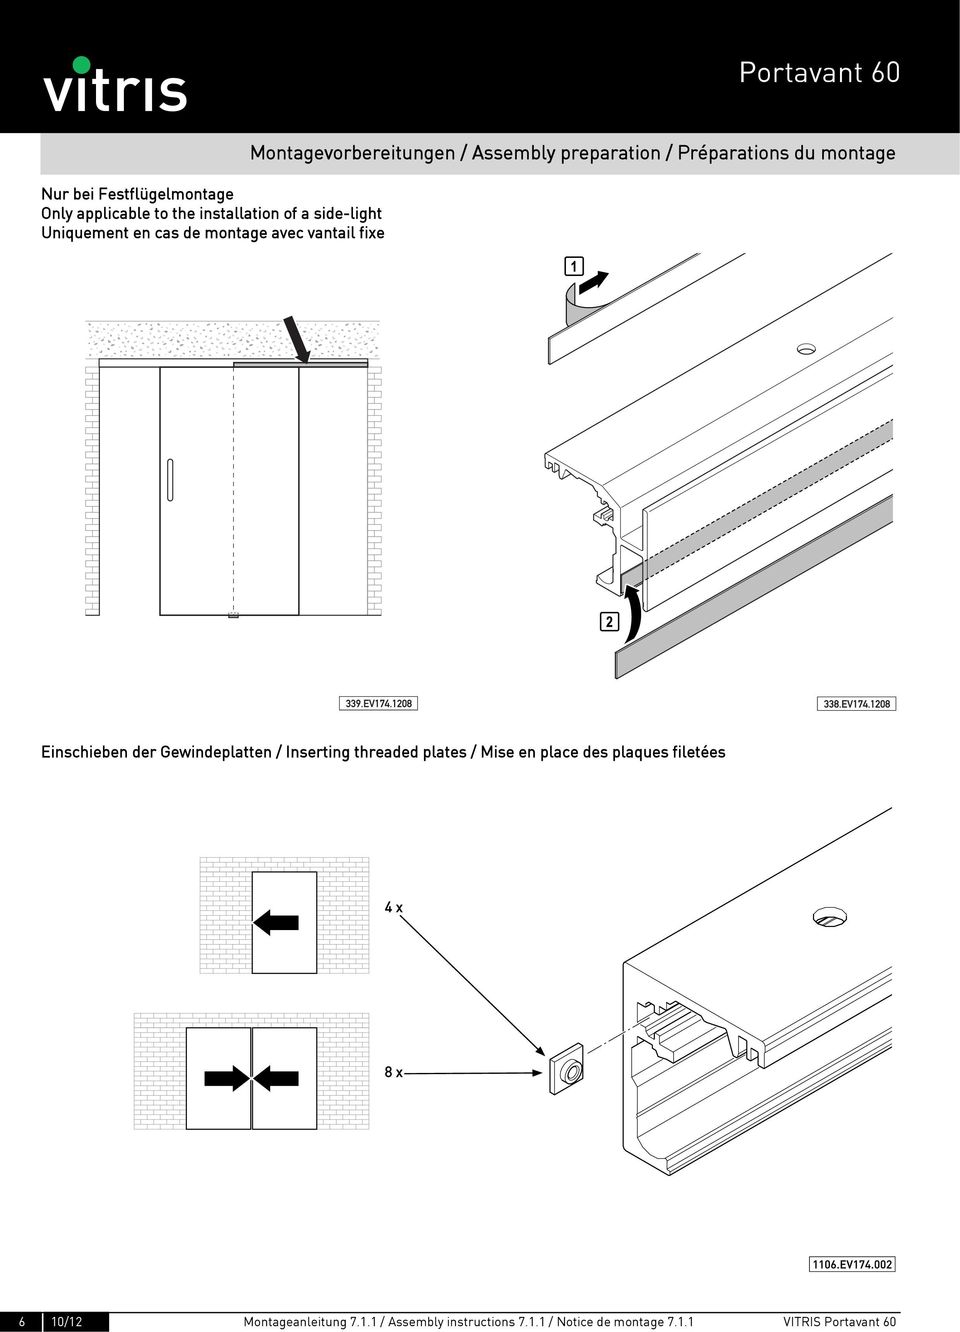 Einschieben der Gewindeplatten / Inserting threaded plates / Mise en place des plaques filetées 6